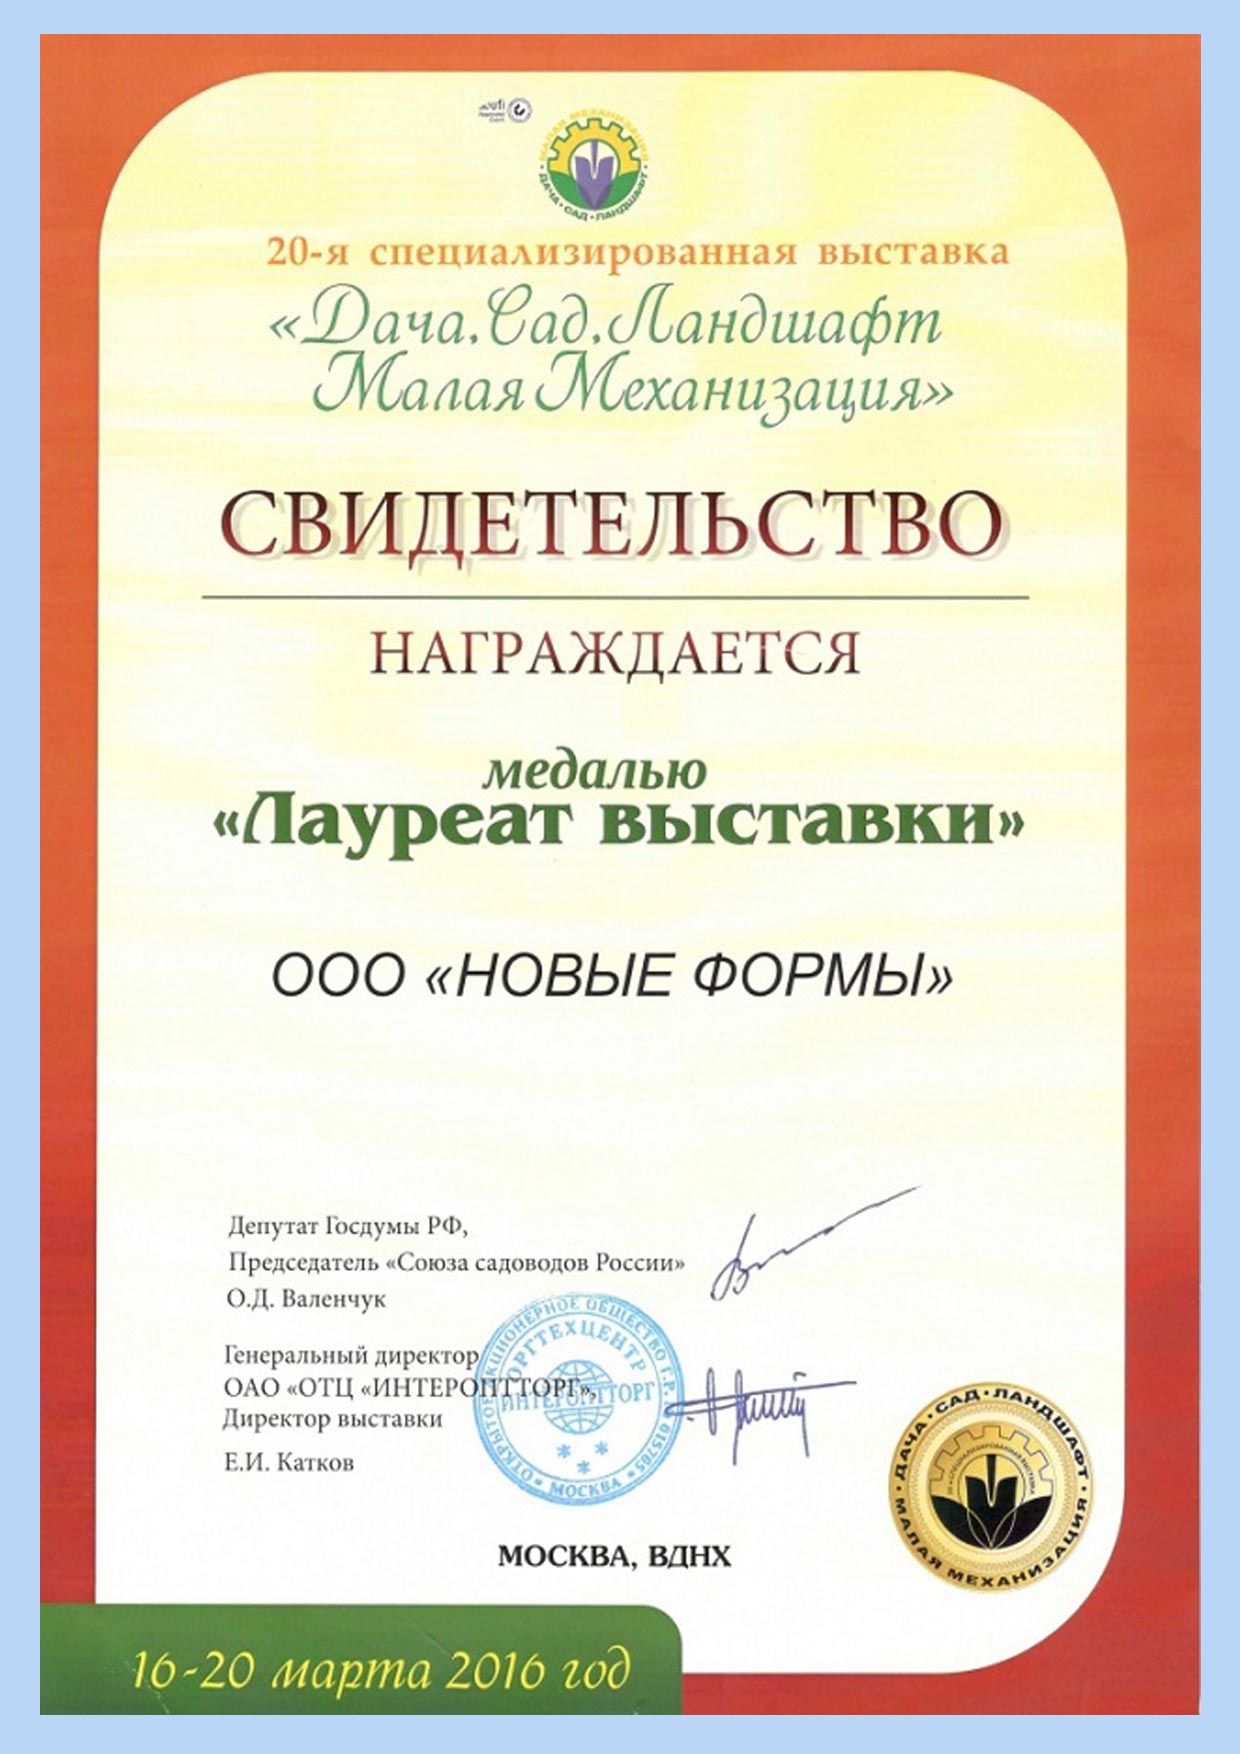 Сертификат Большой